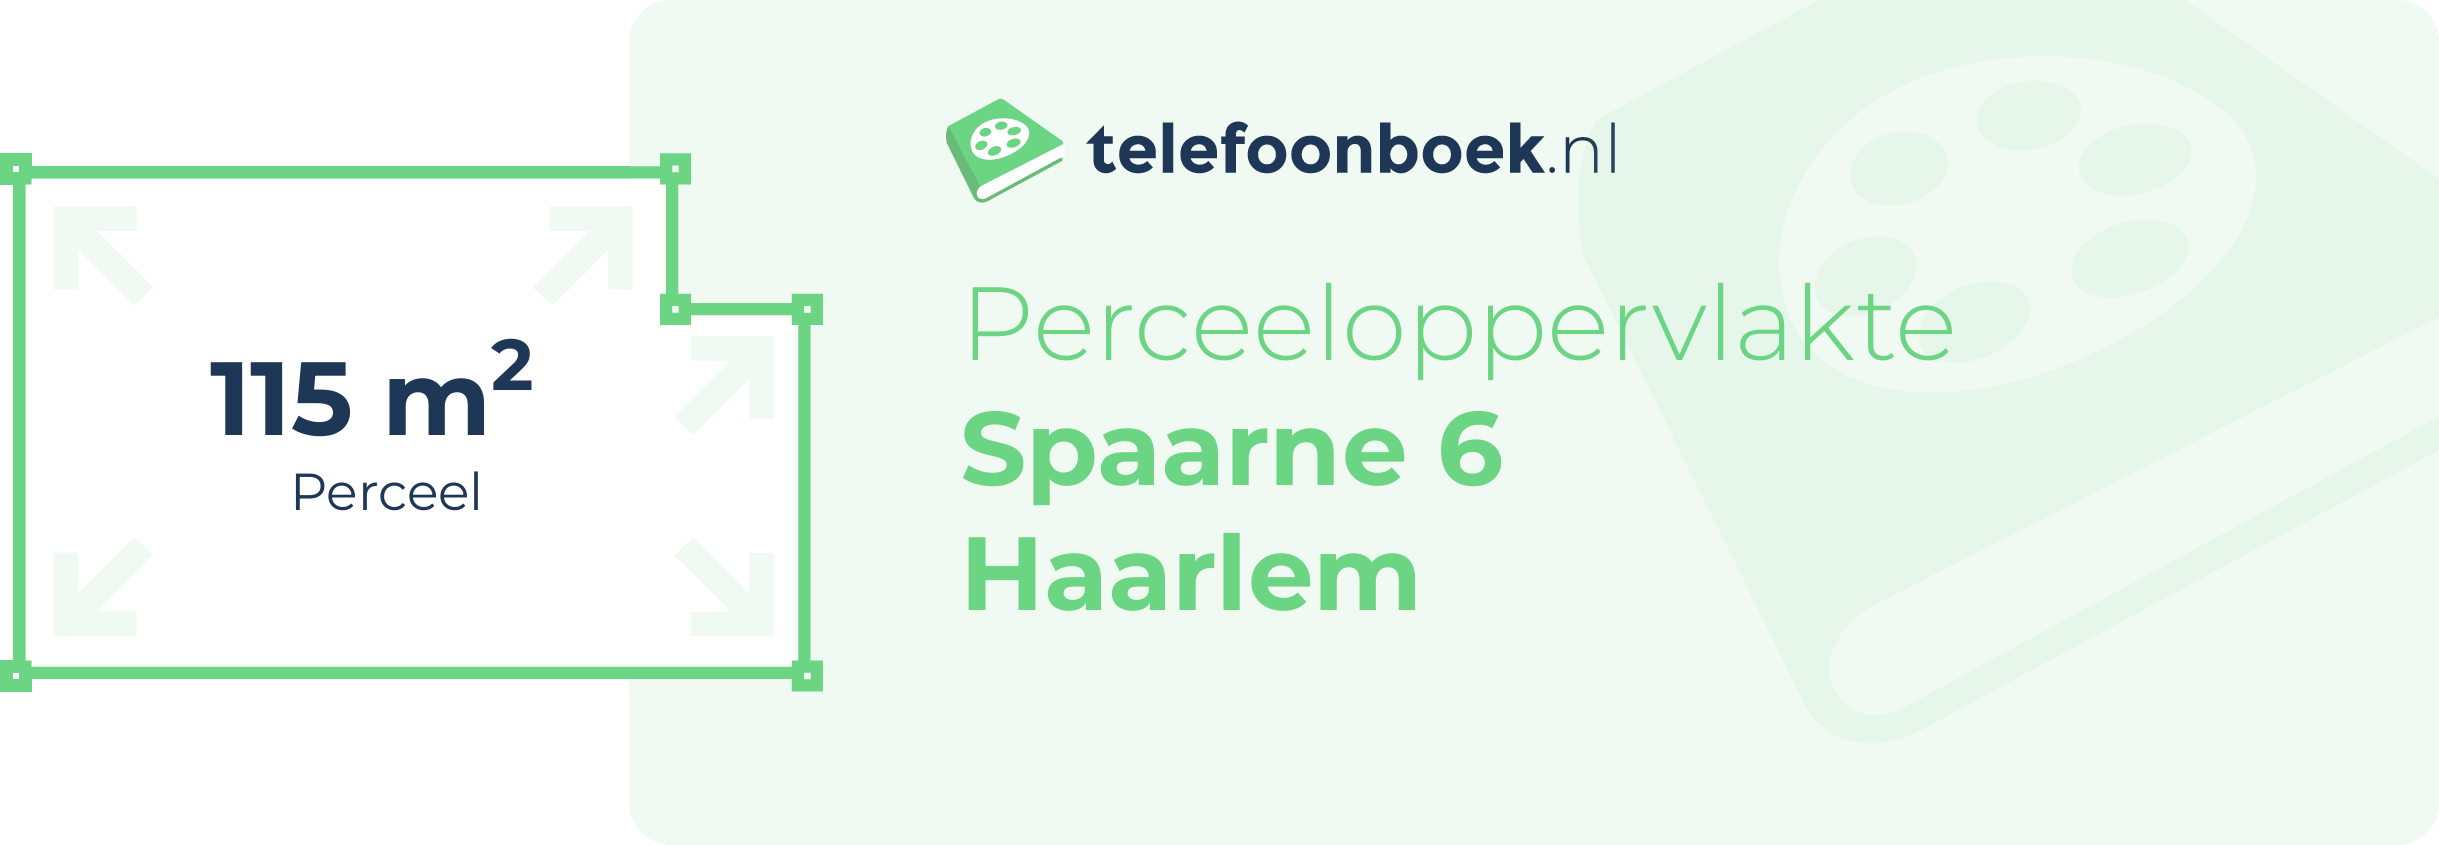 Perceeloppervlakte Spaarne 6 Haarlem